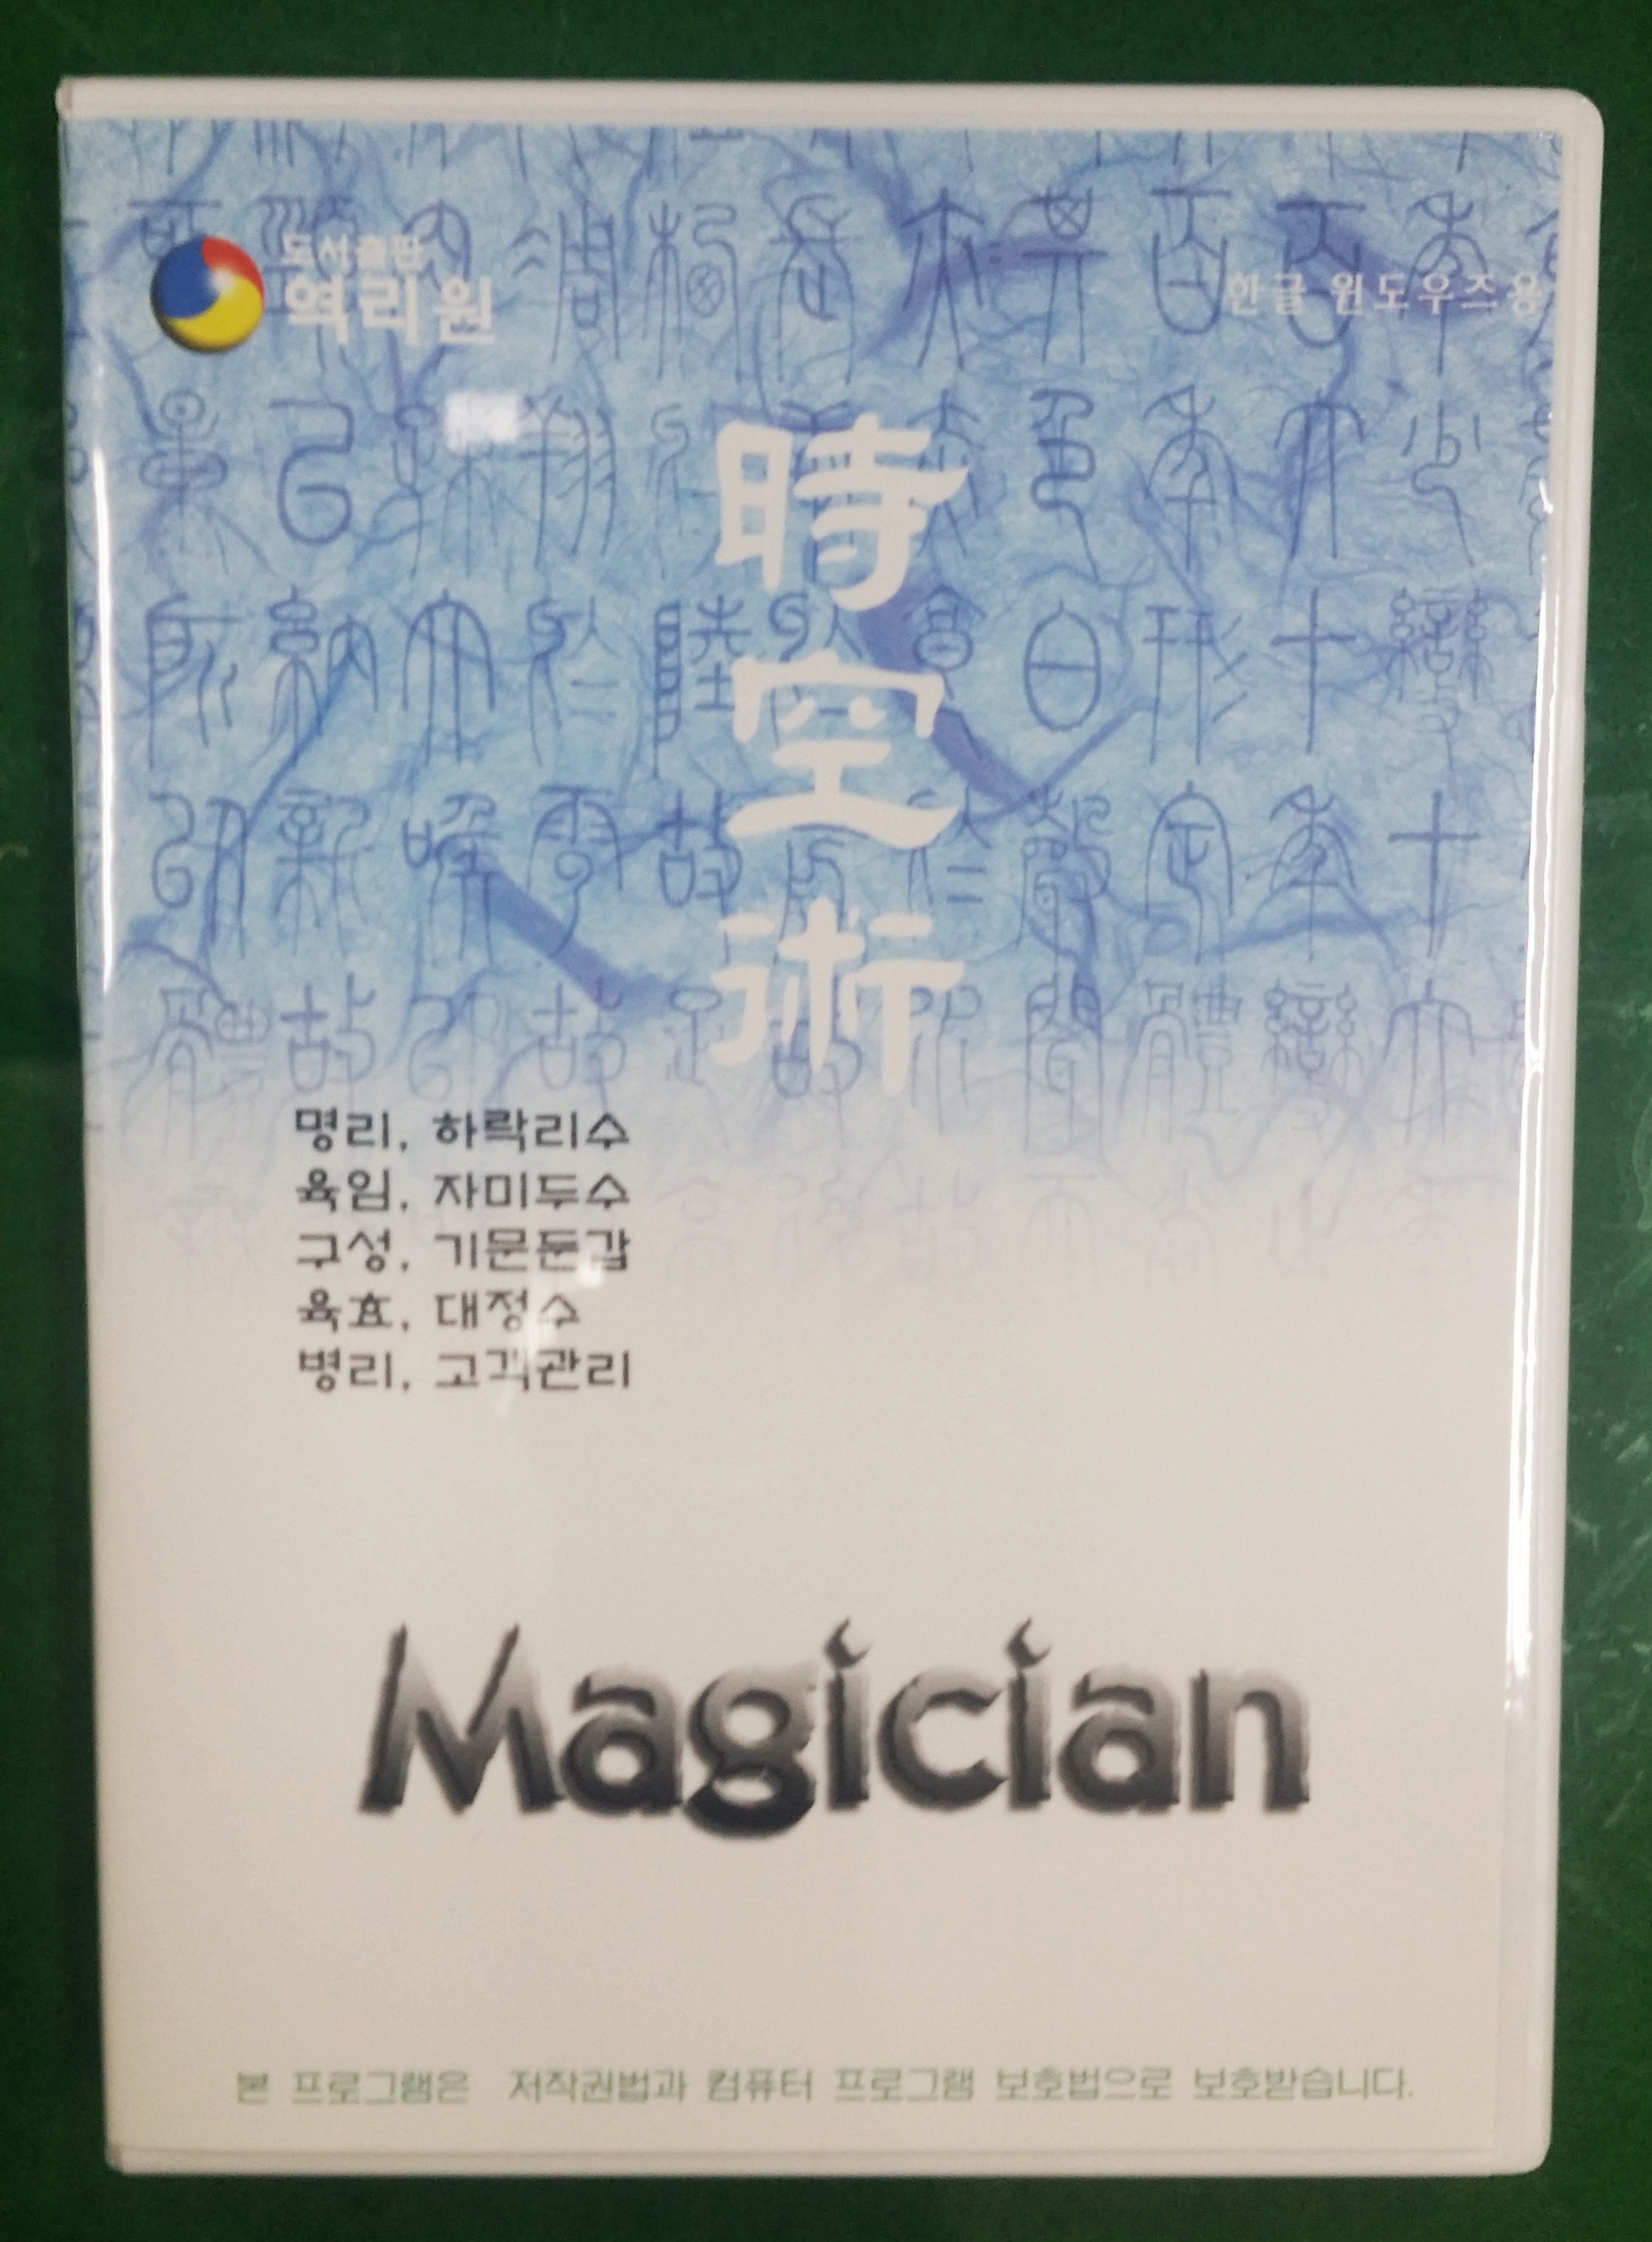 shop99,오상도 선생님의 소프트웨어 Magician V4.1